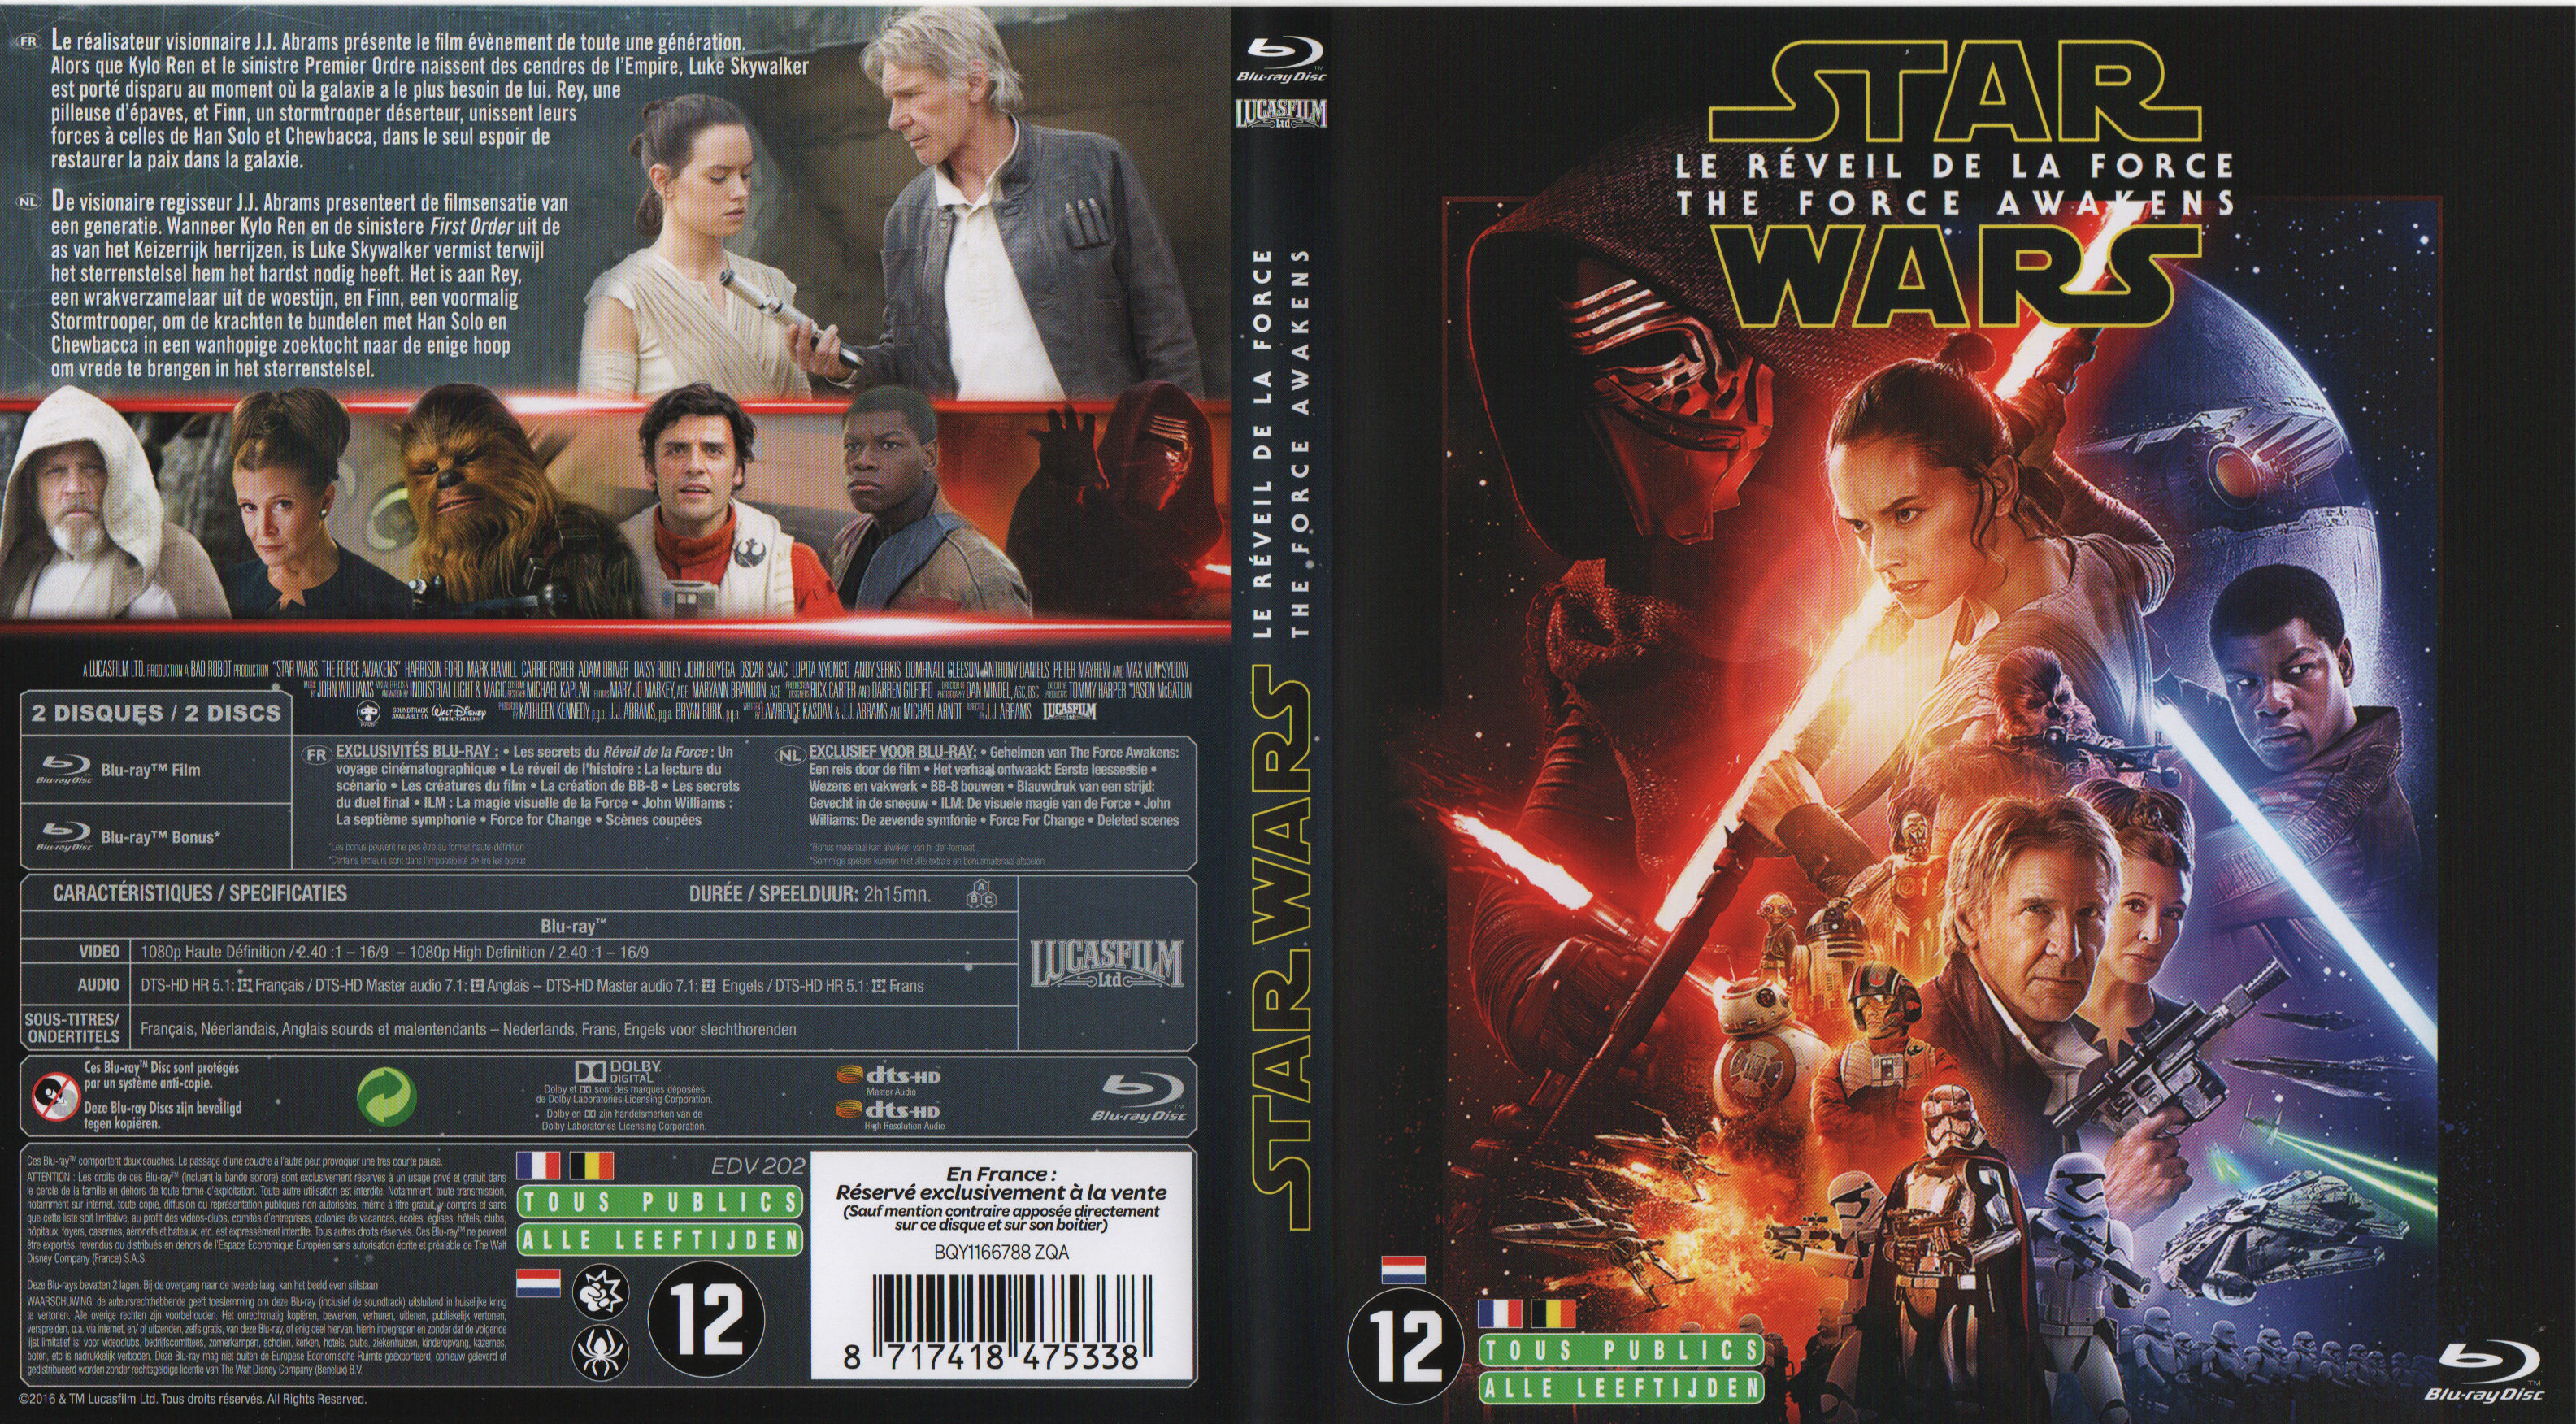 Jaquette DVD Star Wars Episode VII Le Reveil de la Force (BLU-RAY)